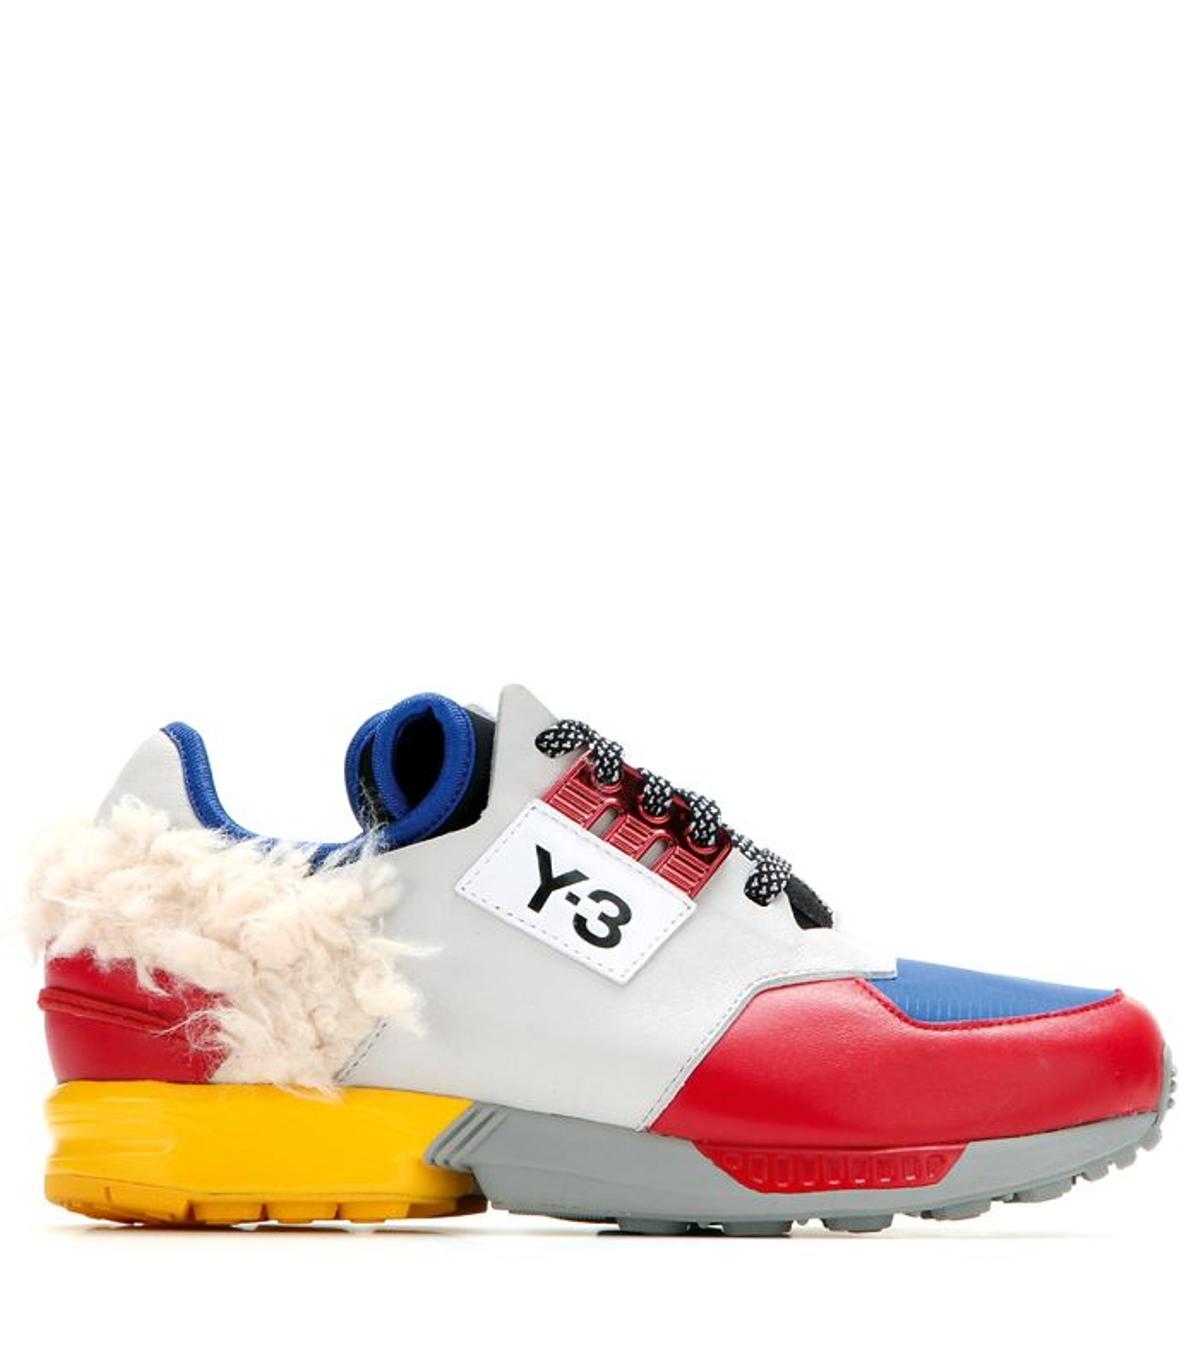 Sneakers Y-3